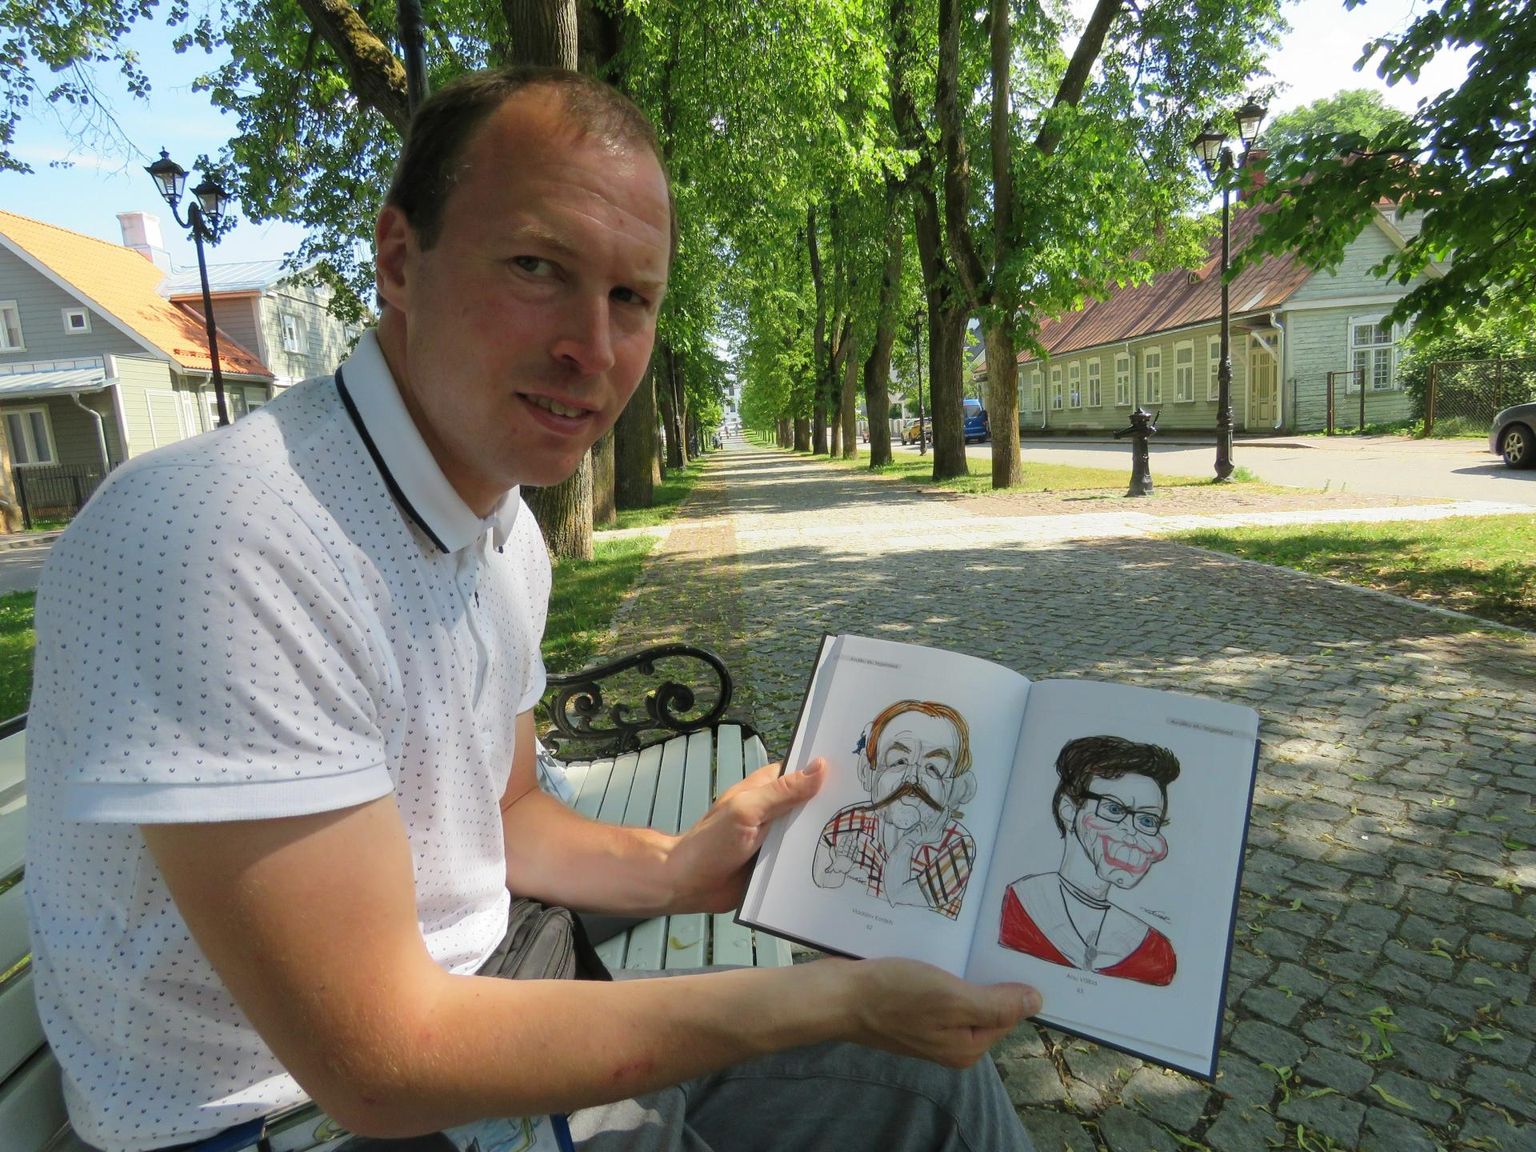 Võru šaržikunstniku Kristjan Lume esikteoses on pildid ka Vladislav Koržetsist ja Anu Välbast.